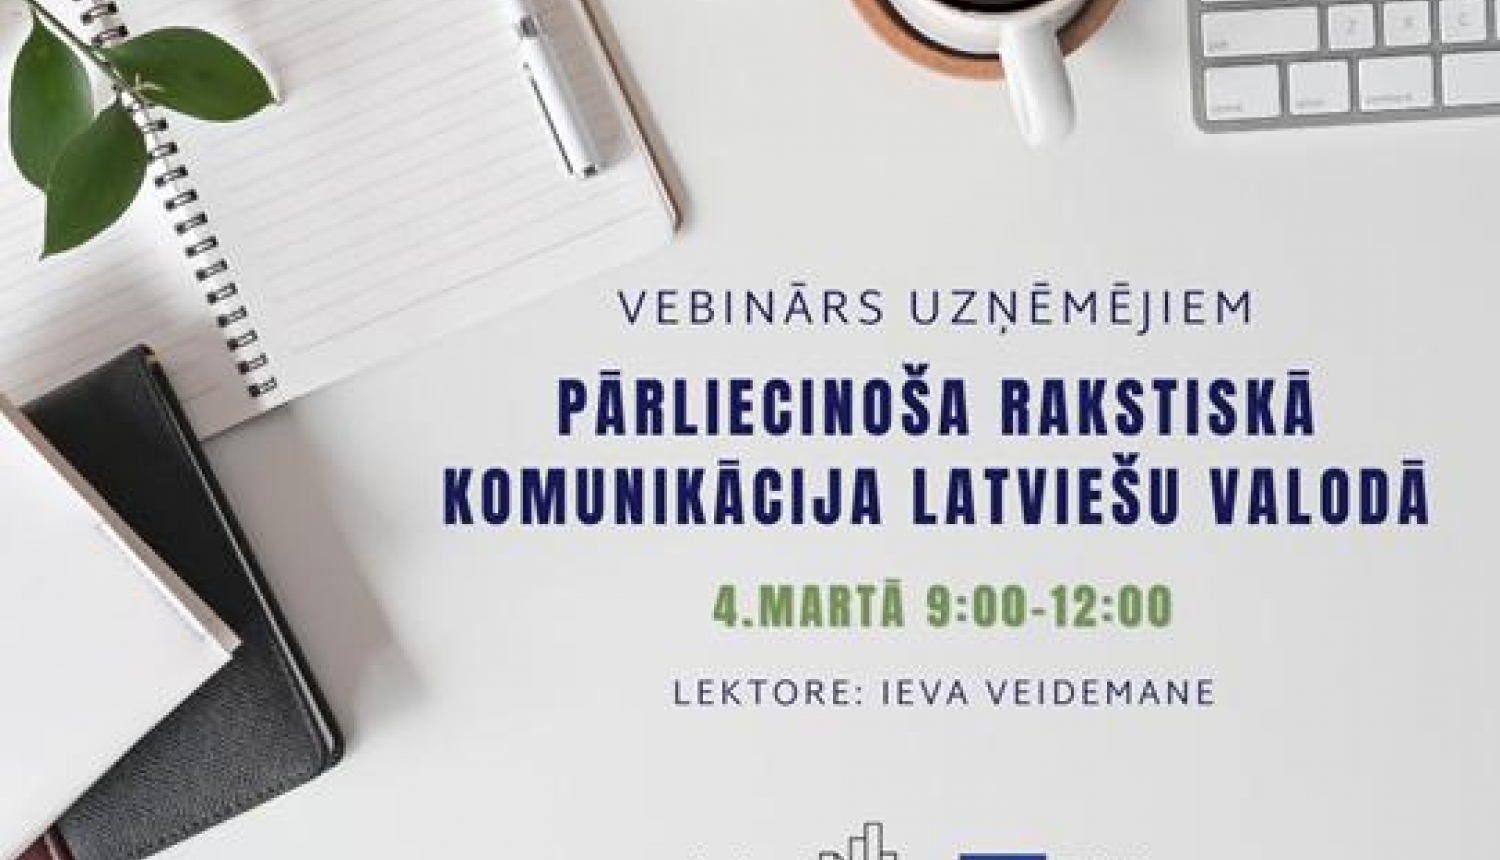 Uzņēmējus aicina uz bezmaksas semināru "Pārliecinoša rakstiskā komunikācija latviešu valodā"